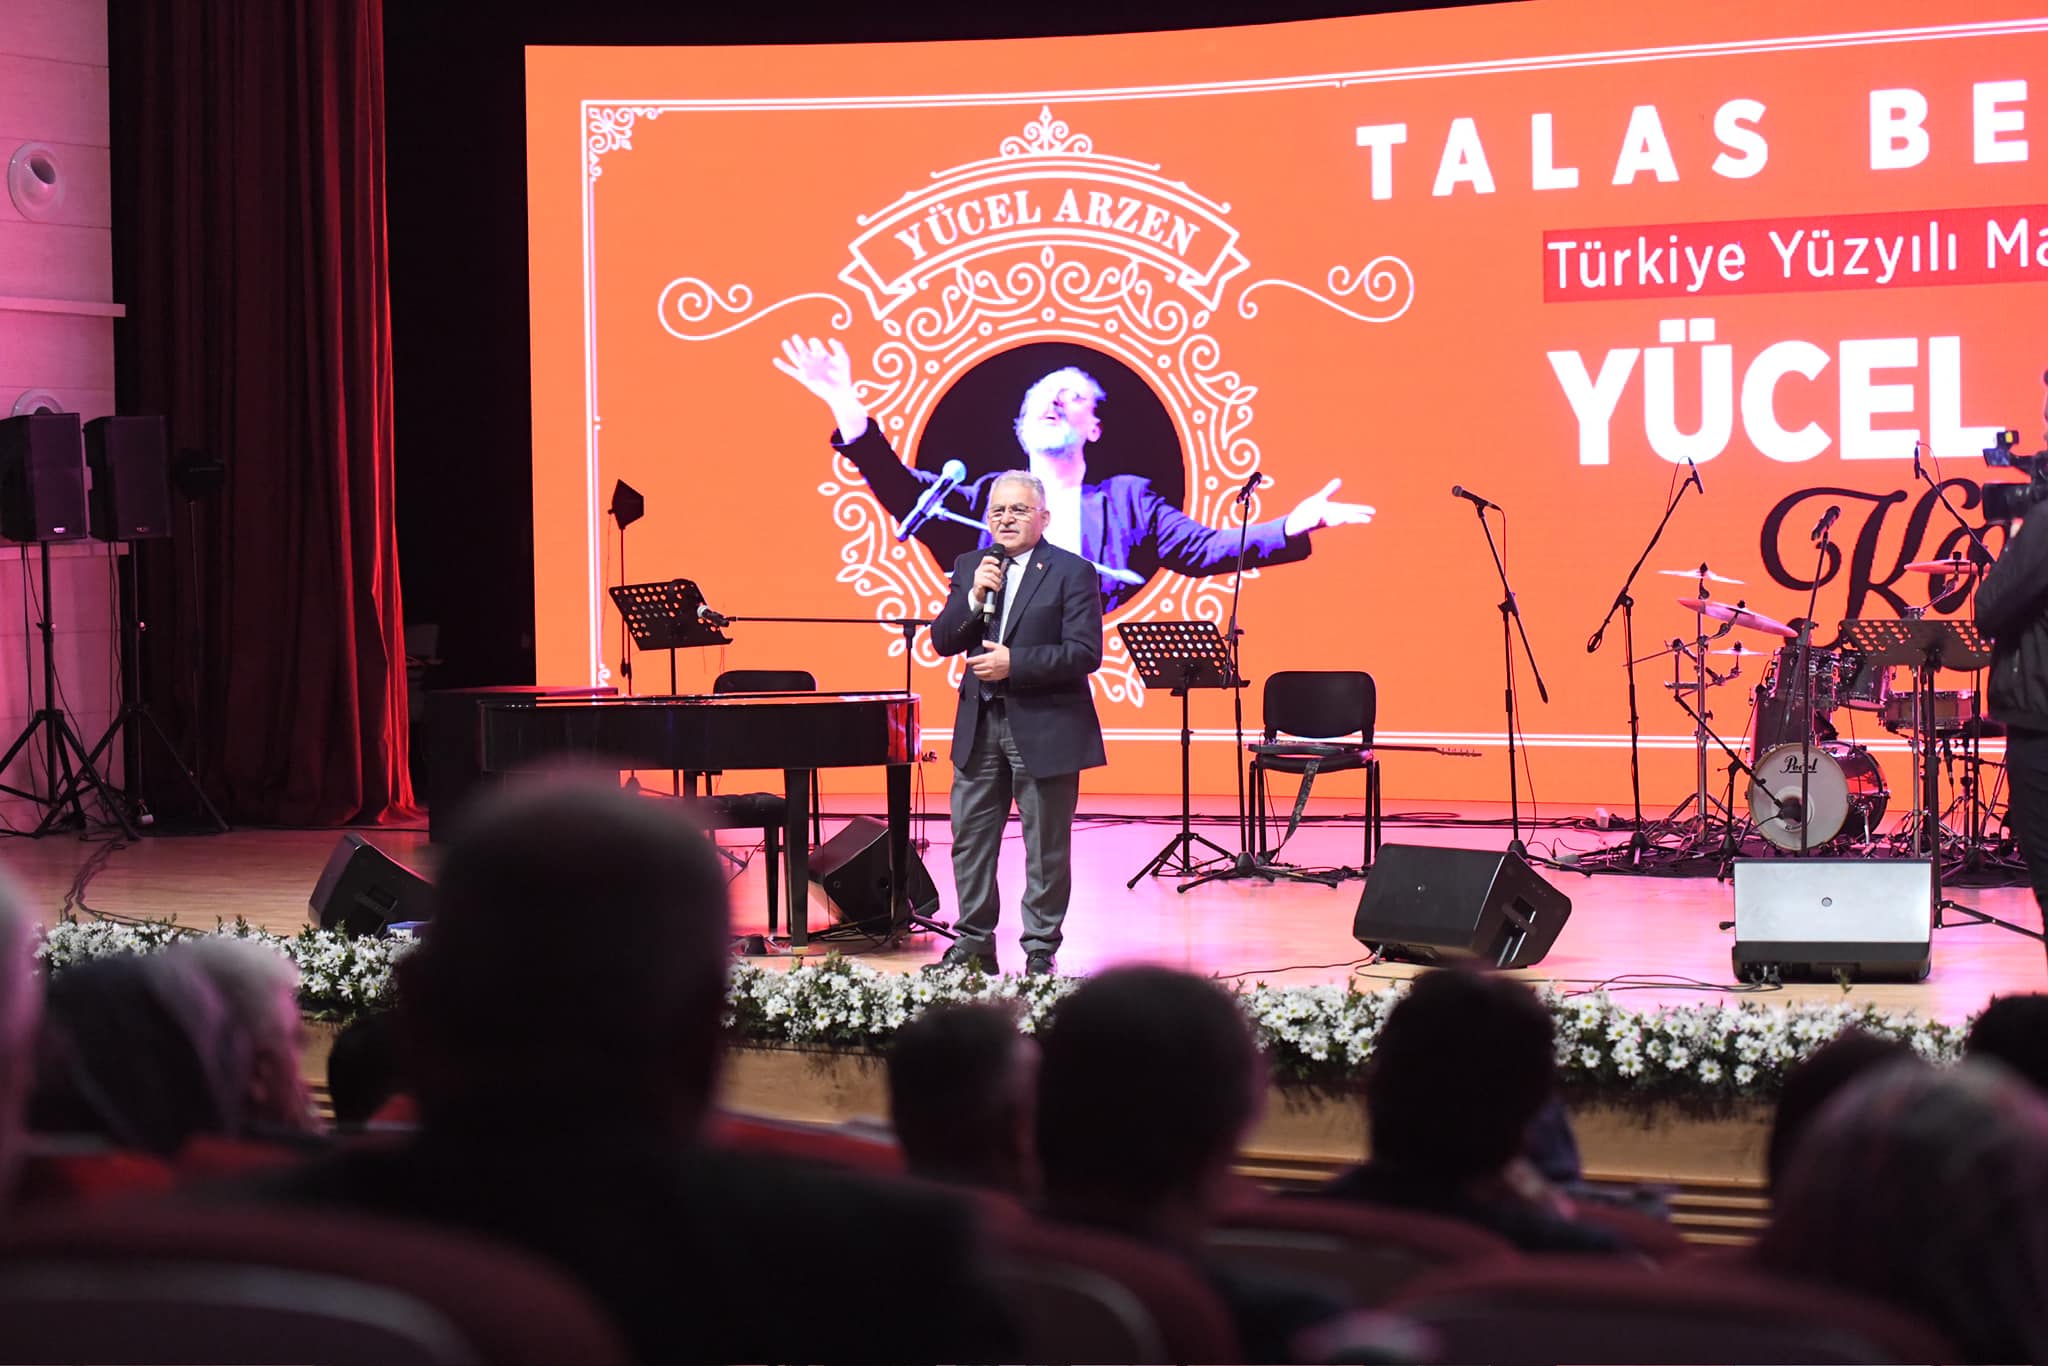 Başkan Büyükkılıç, Türkiye Yüzyılı Marşı’nın Bestekarı Arzen’in konserine katıldı